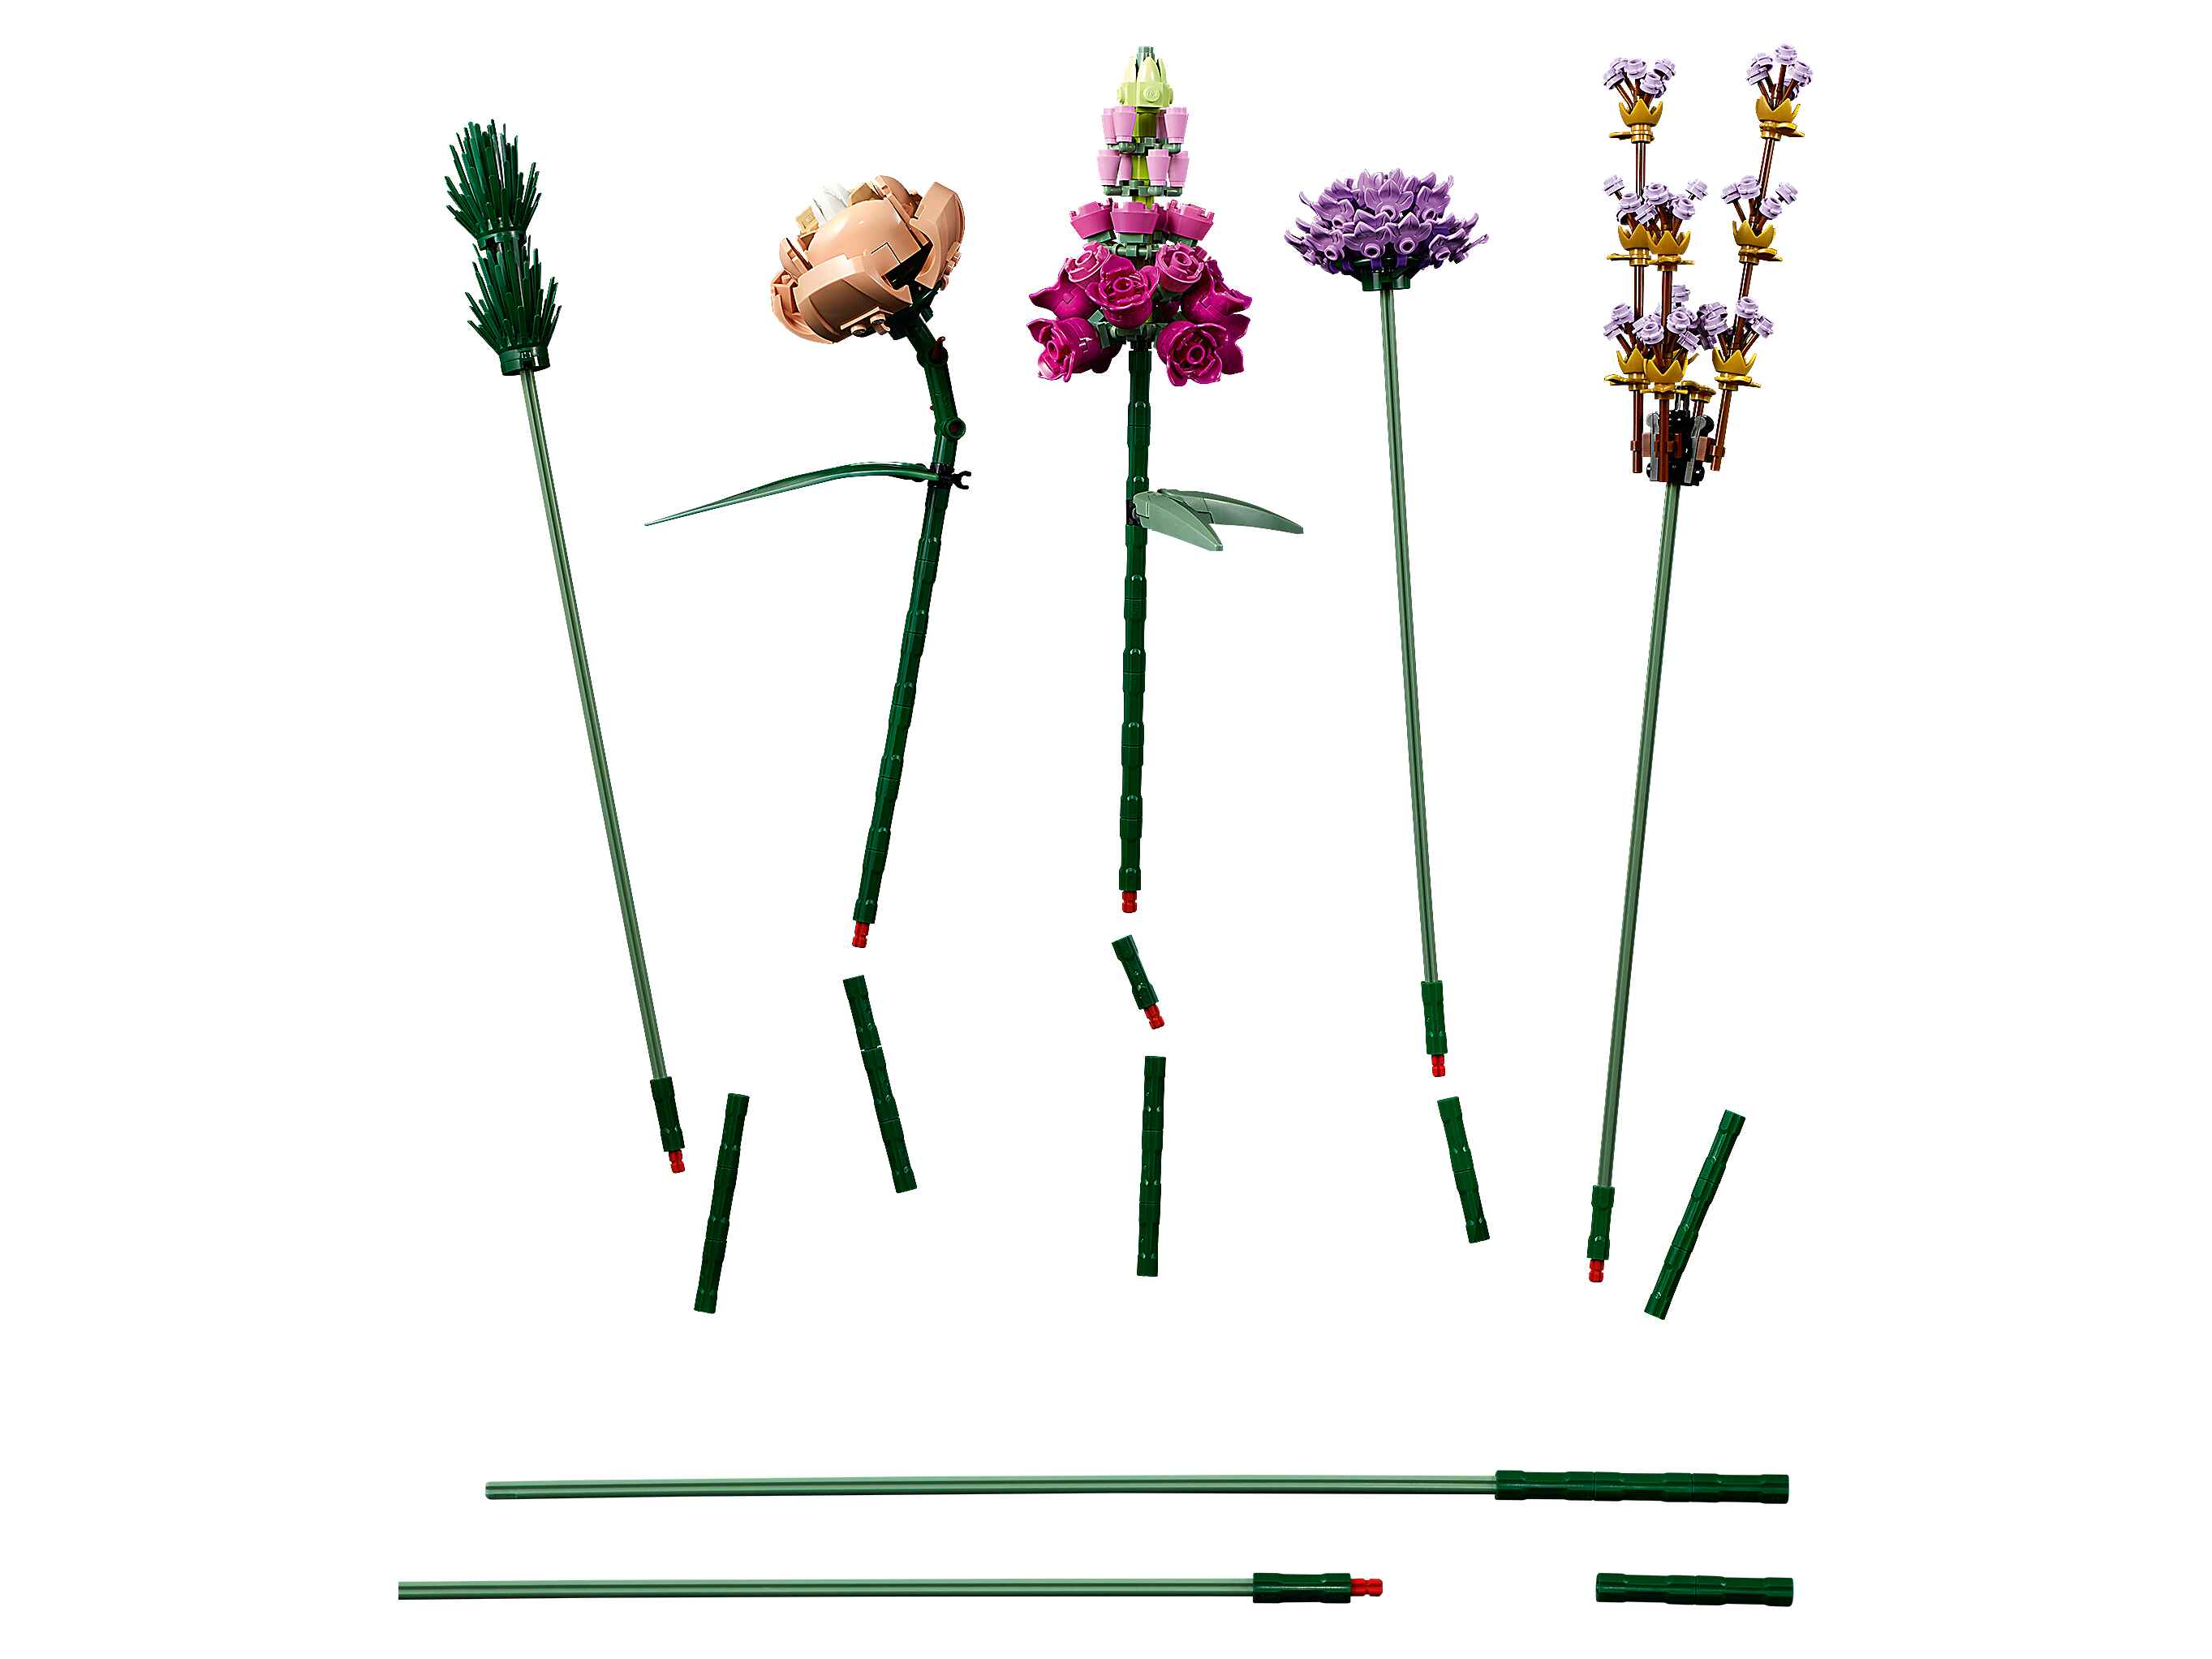 LEGO 10280 Blumenstrauß, künstliche Blumen, Botanik-Kollektion, Home Deko